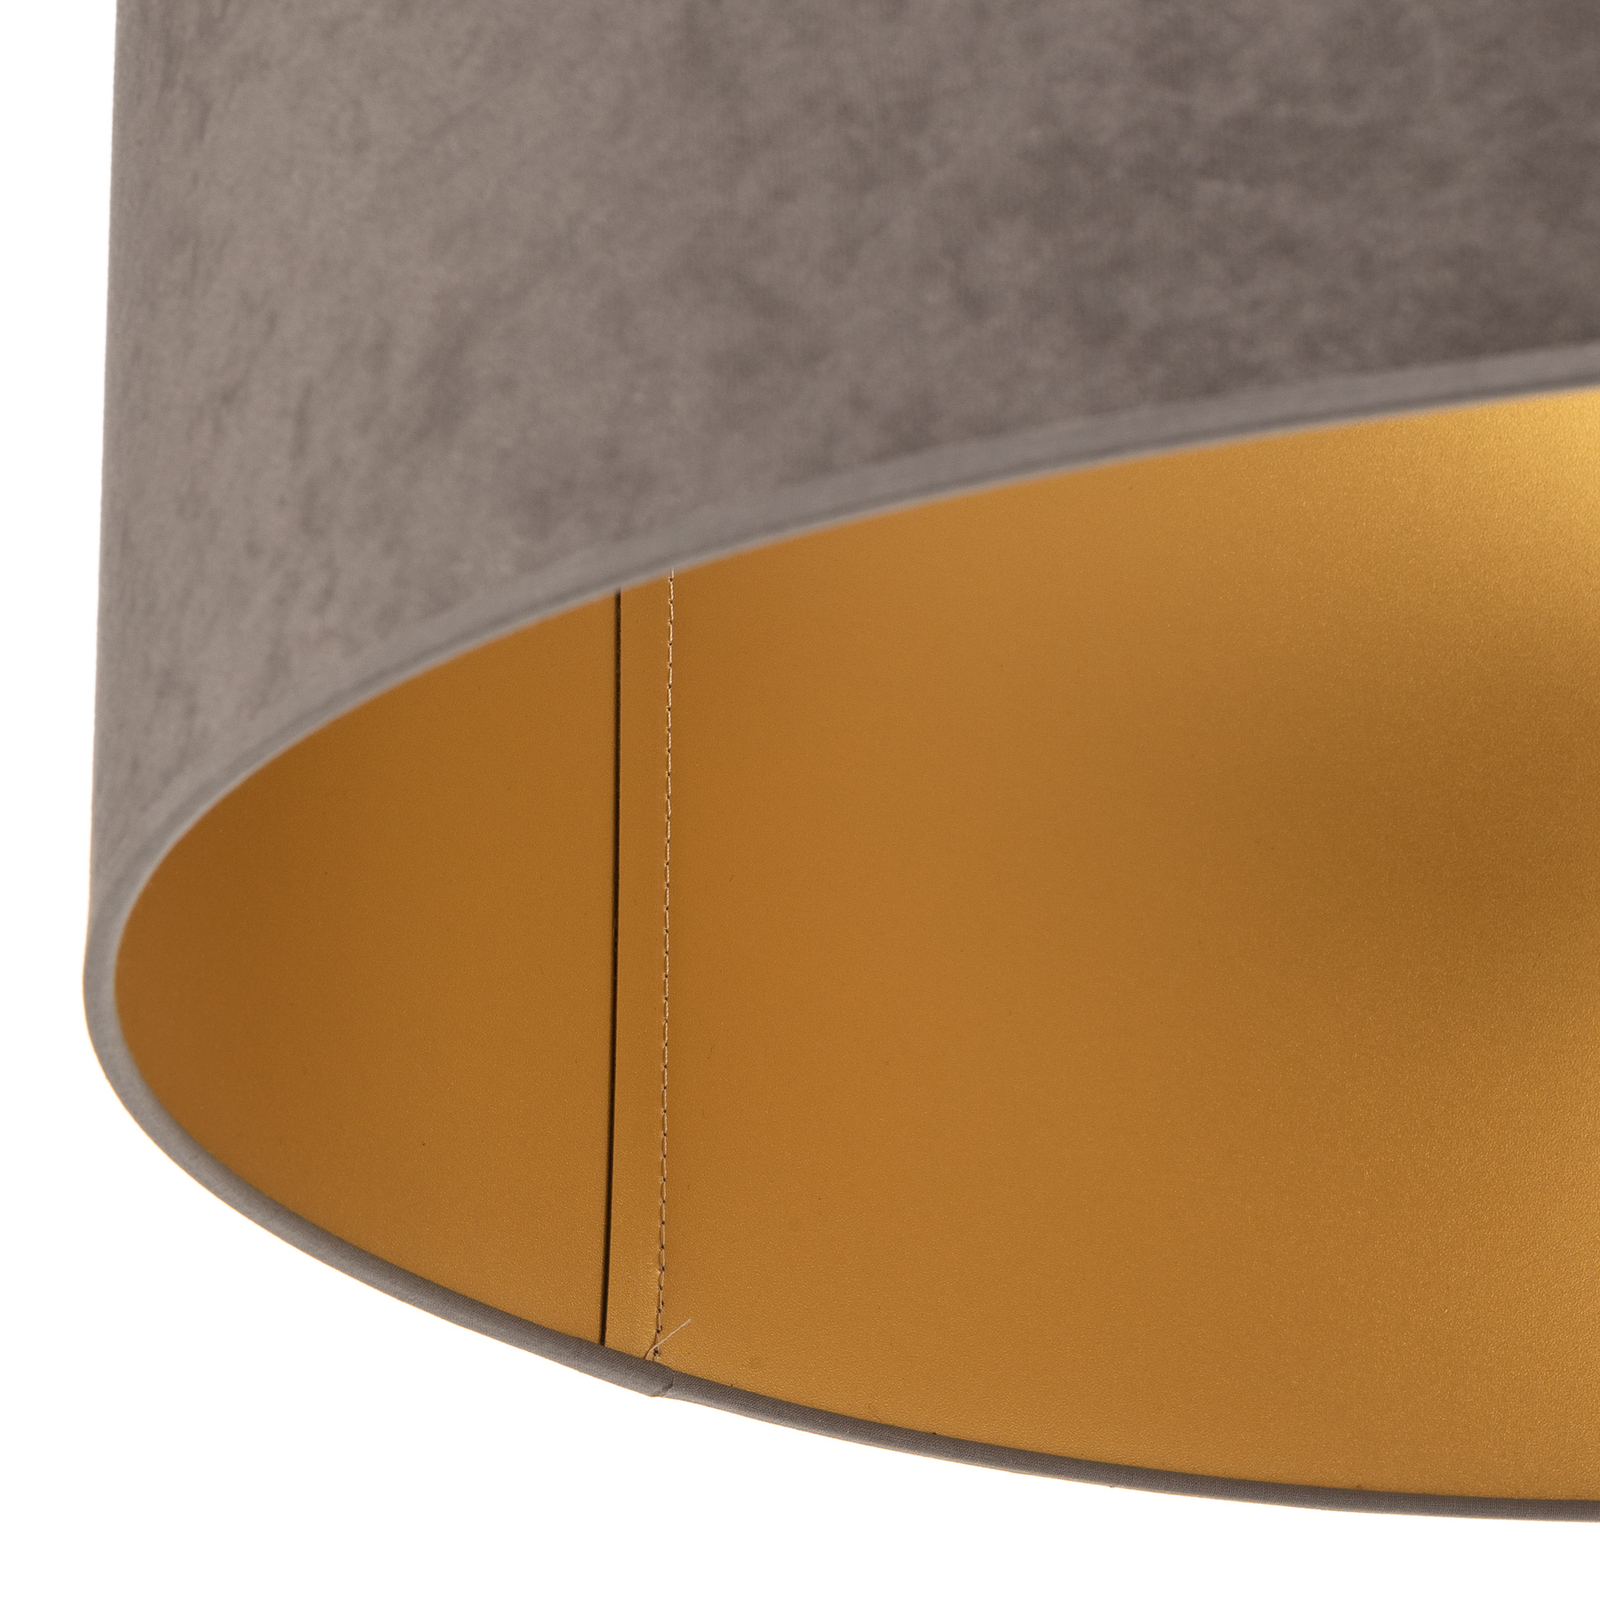 Plafondlamp Golden Roller Ø 60cm grijs/goud